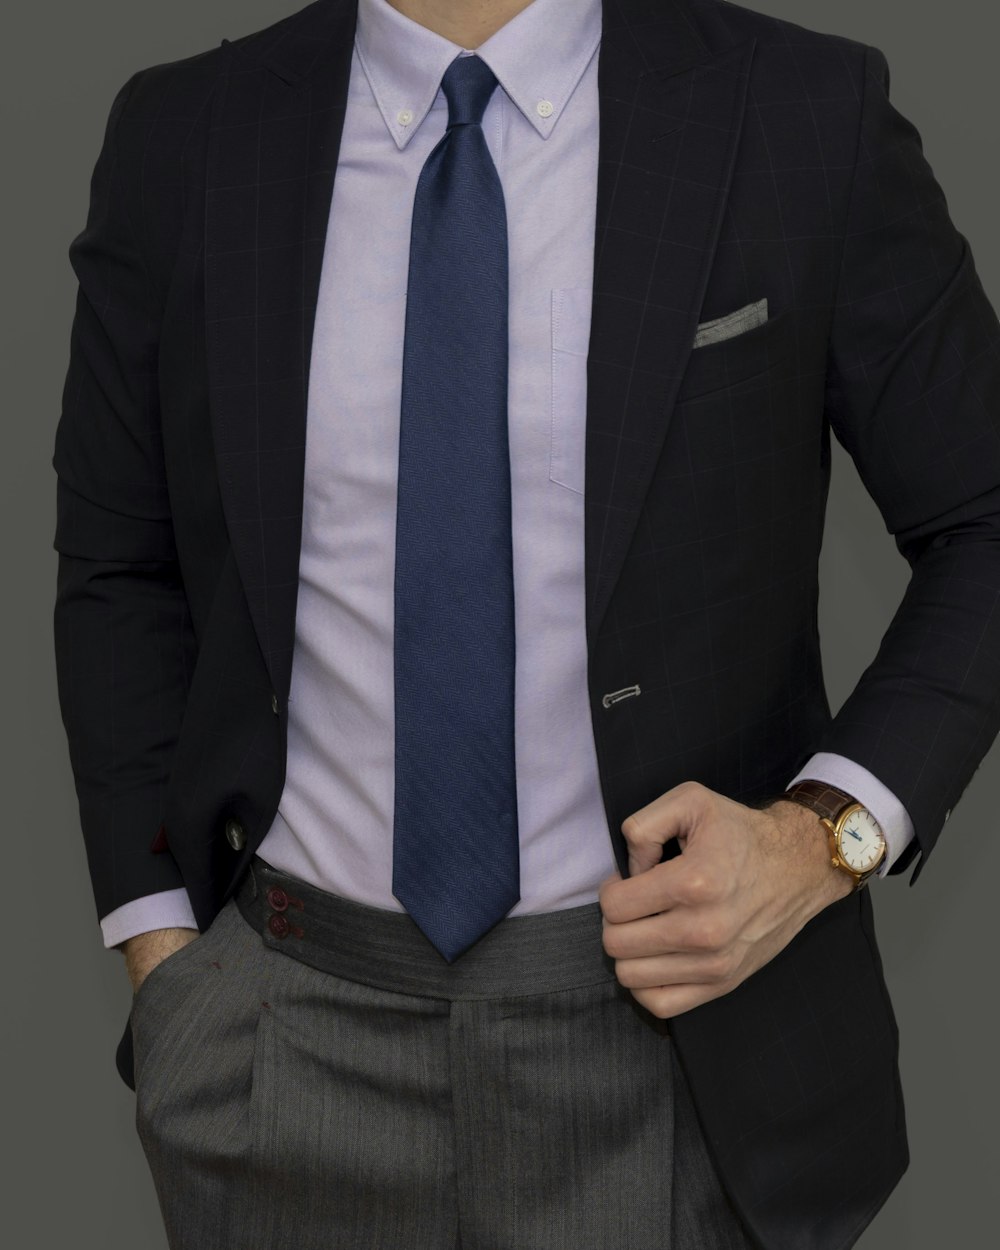 homem na jaqueta do terno preto e gravata azul